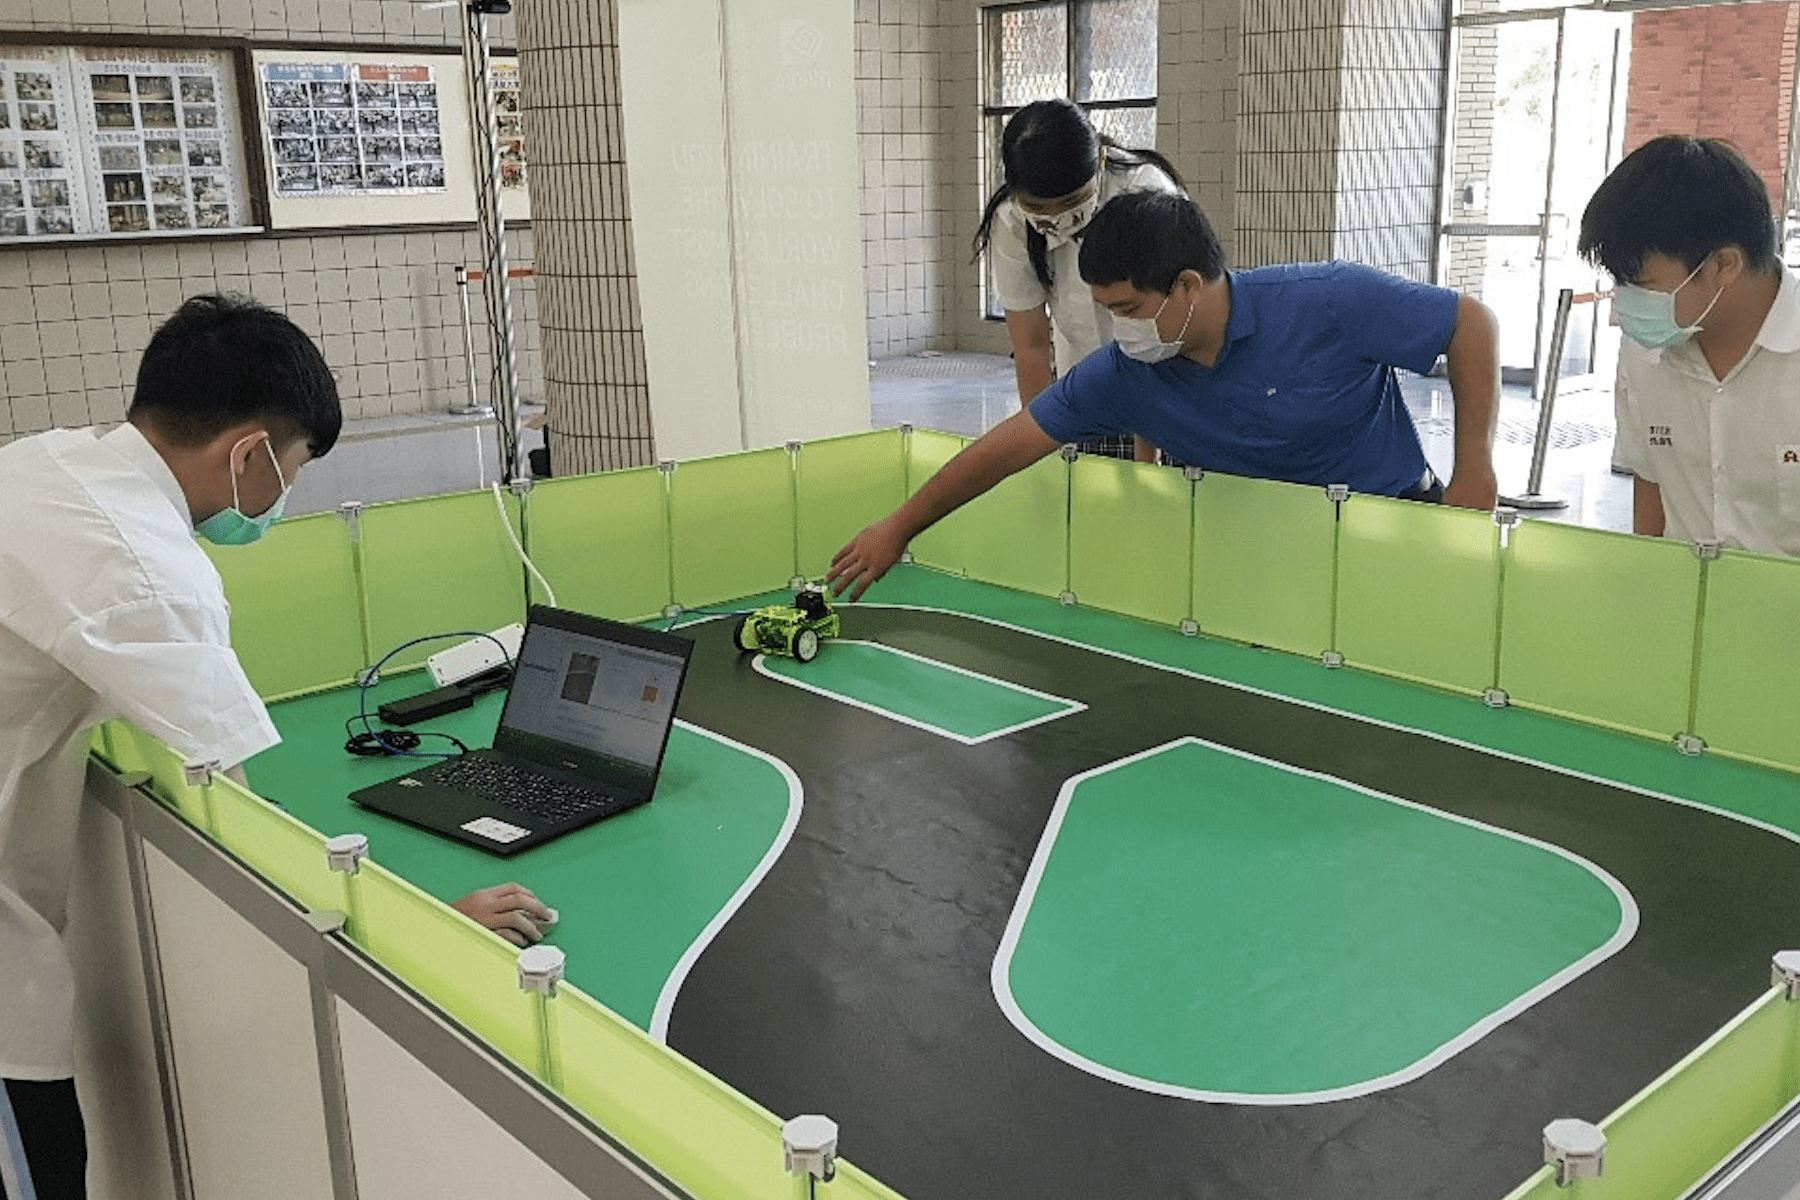 ▲參賽師生將使用 NVIDIA JetBot開放原始碼訓練自駕車機器學習，完成道路障礙識別挑戰。(圖/新北市青年局提供)